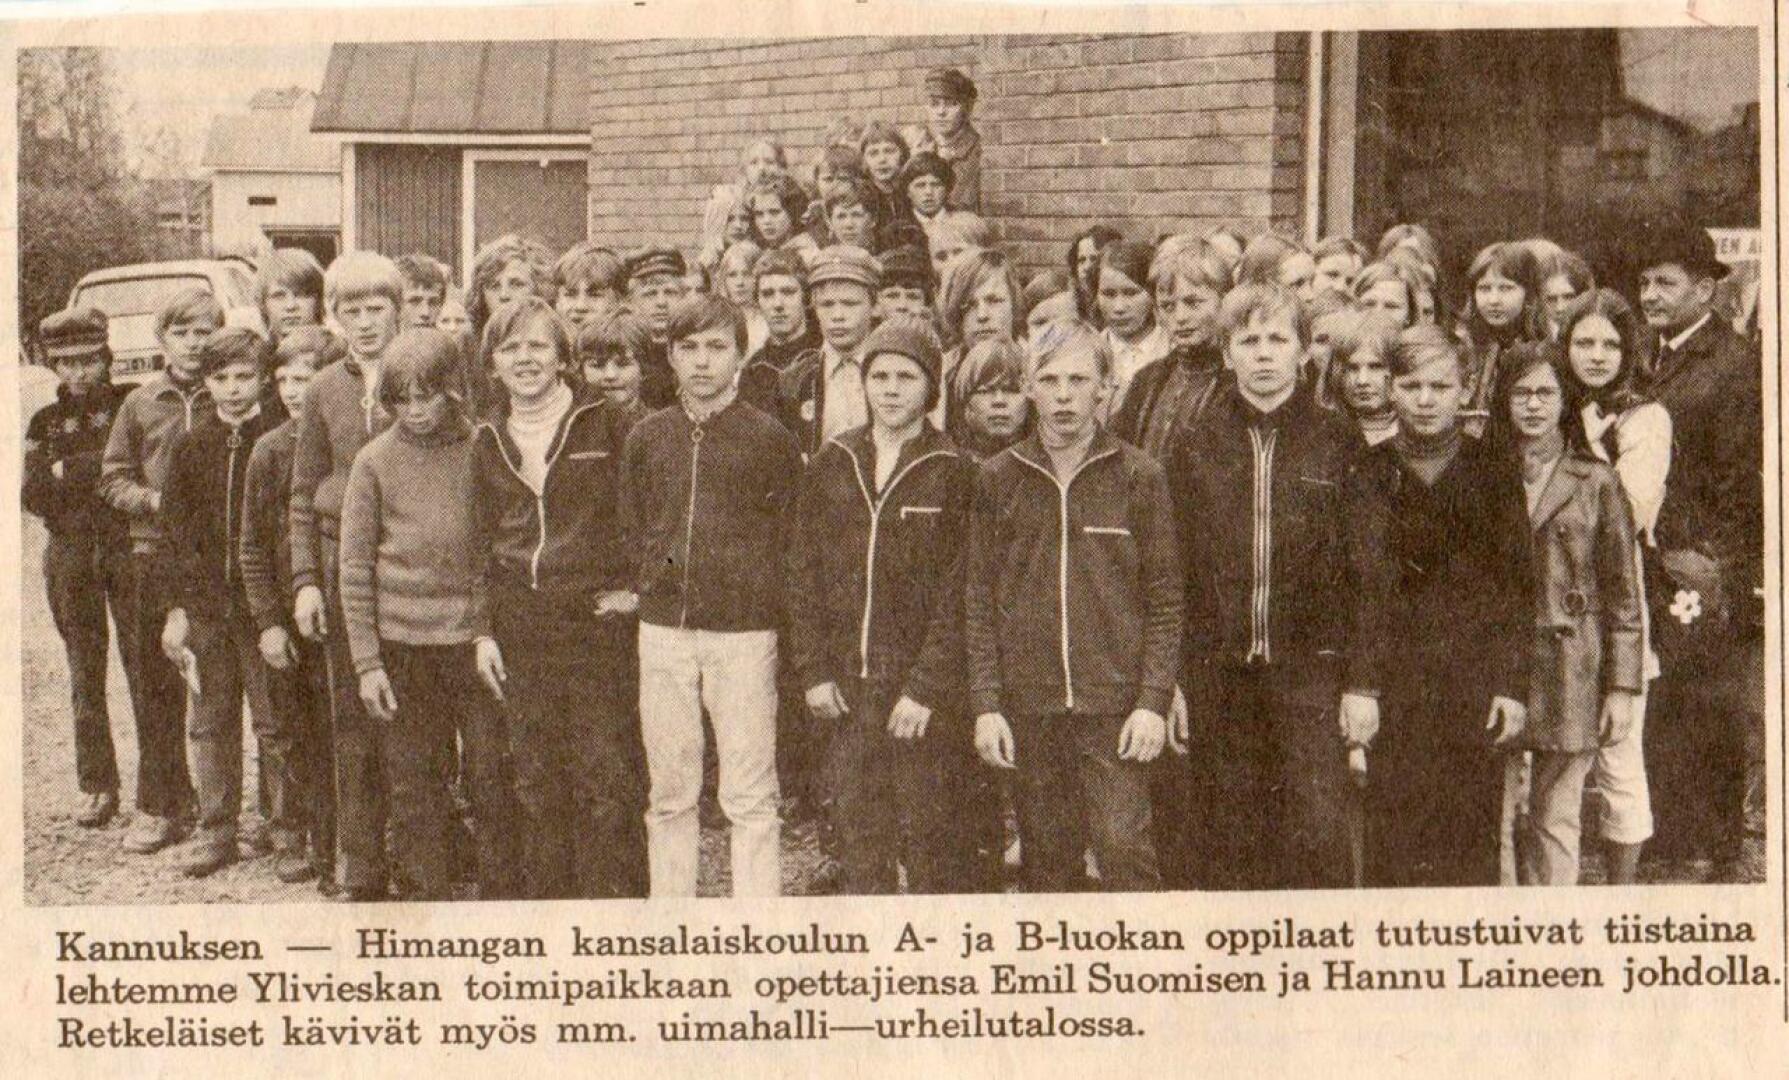 Juha Mottinen lähetti toimitukseen lehtileikkeen todennäköisesti Keskipohjanmaasta. Mottinen itse on pitkä vaalea poika kuudentena vasemmalta. Kansalaiskoulun seitsemäsluokkalaiset kävivät Ylivieskassa vuonna 1971.